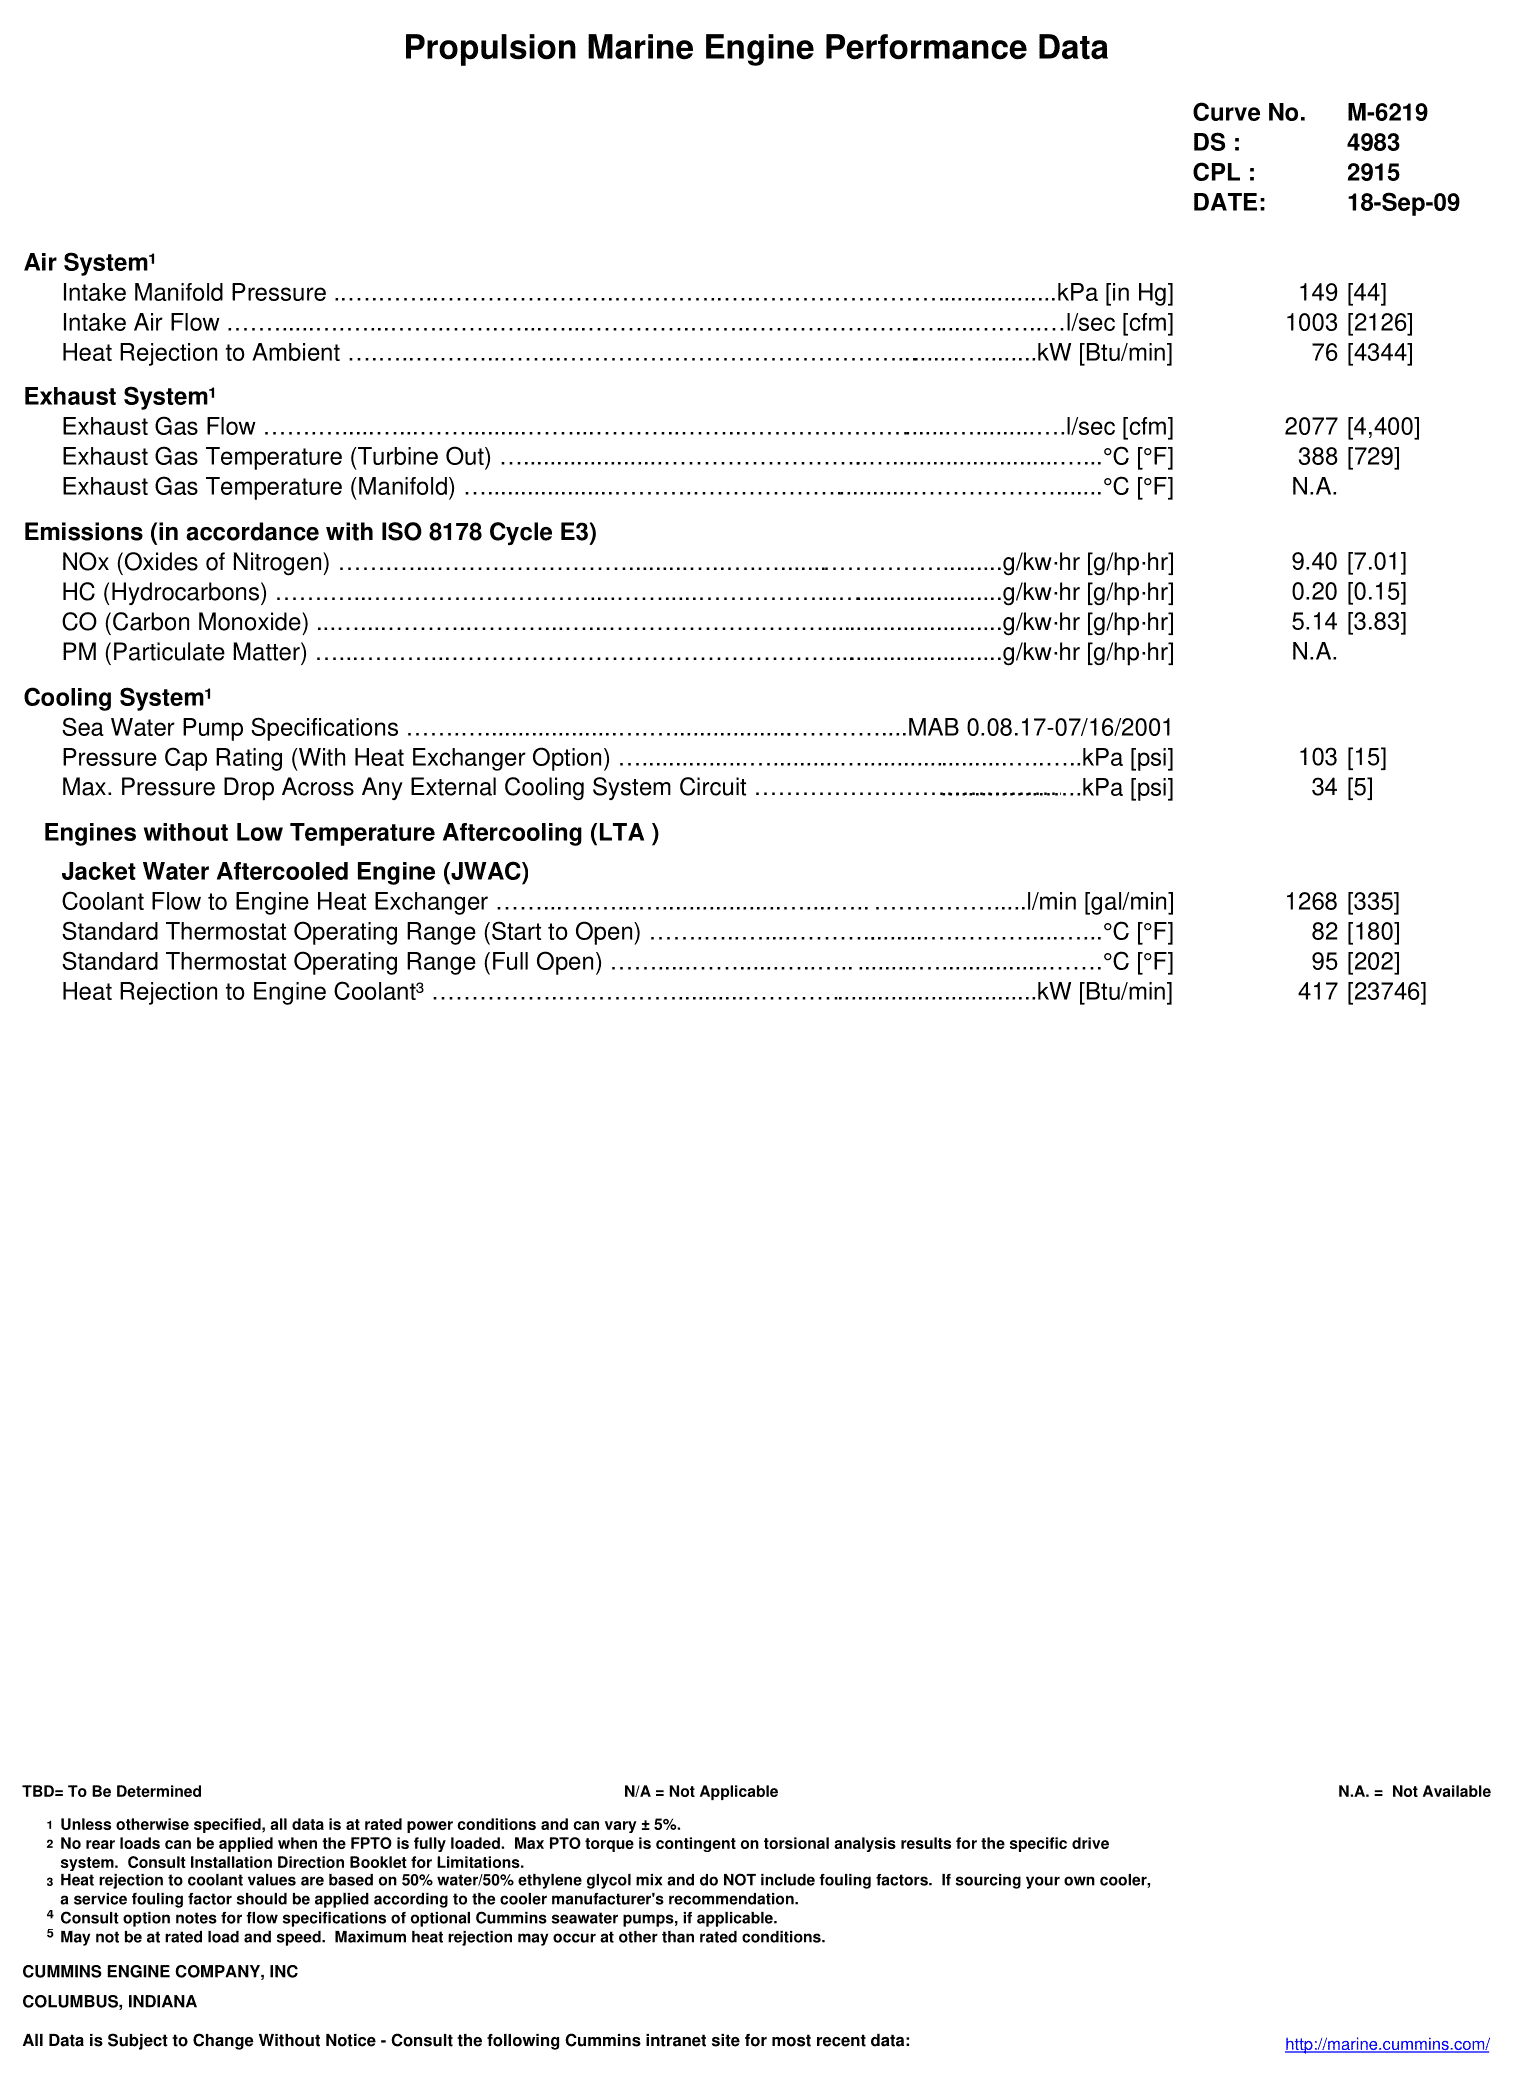 Cummins KT38-M850 datasheet